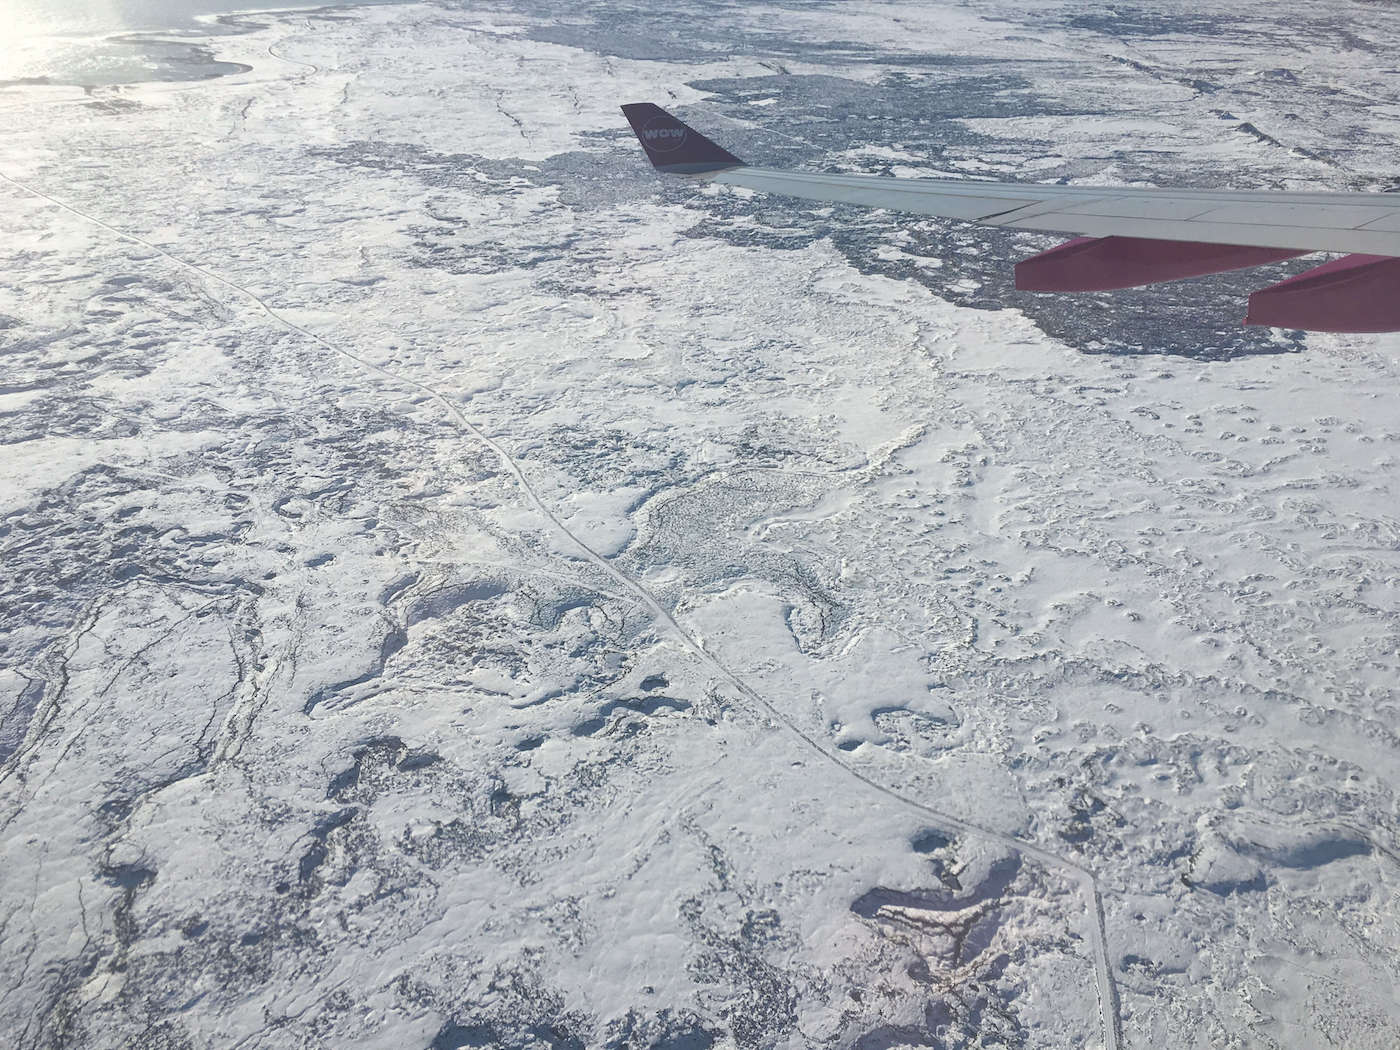 Vista de Iceland através da Janela do avião, o país todo branco de neve